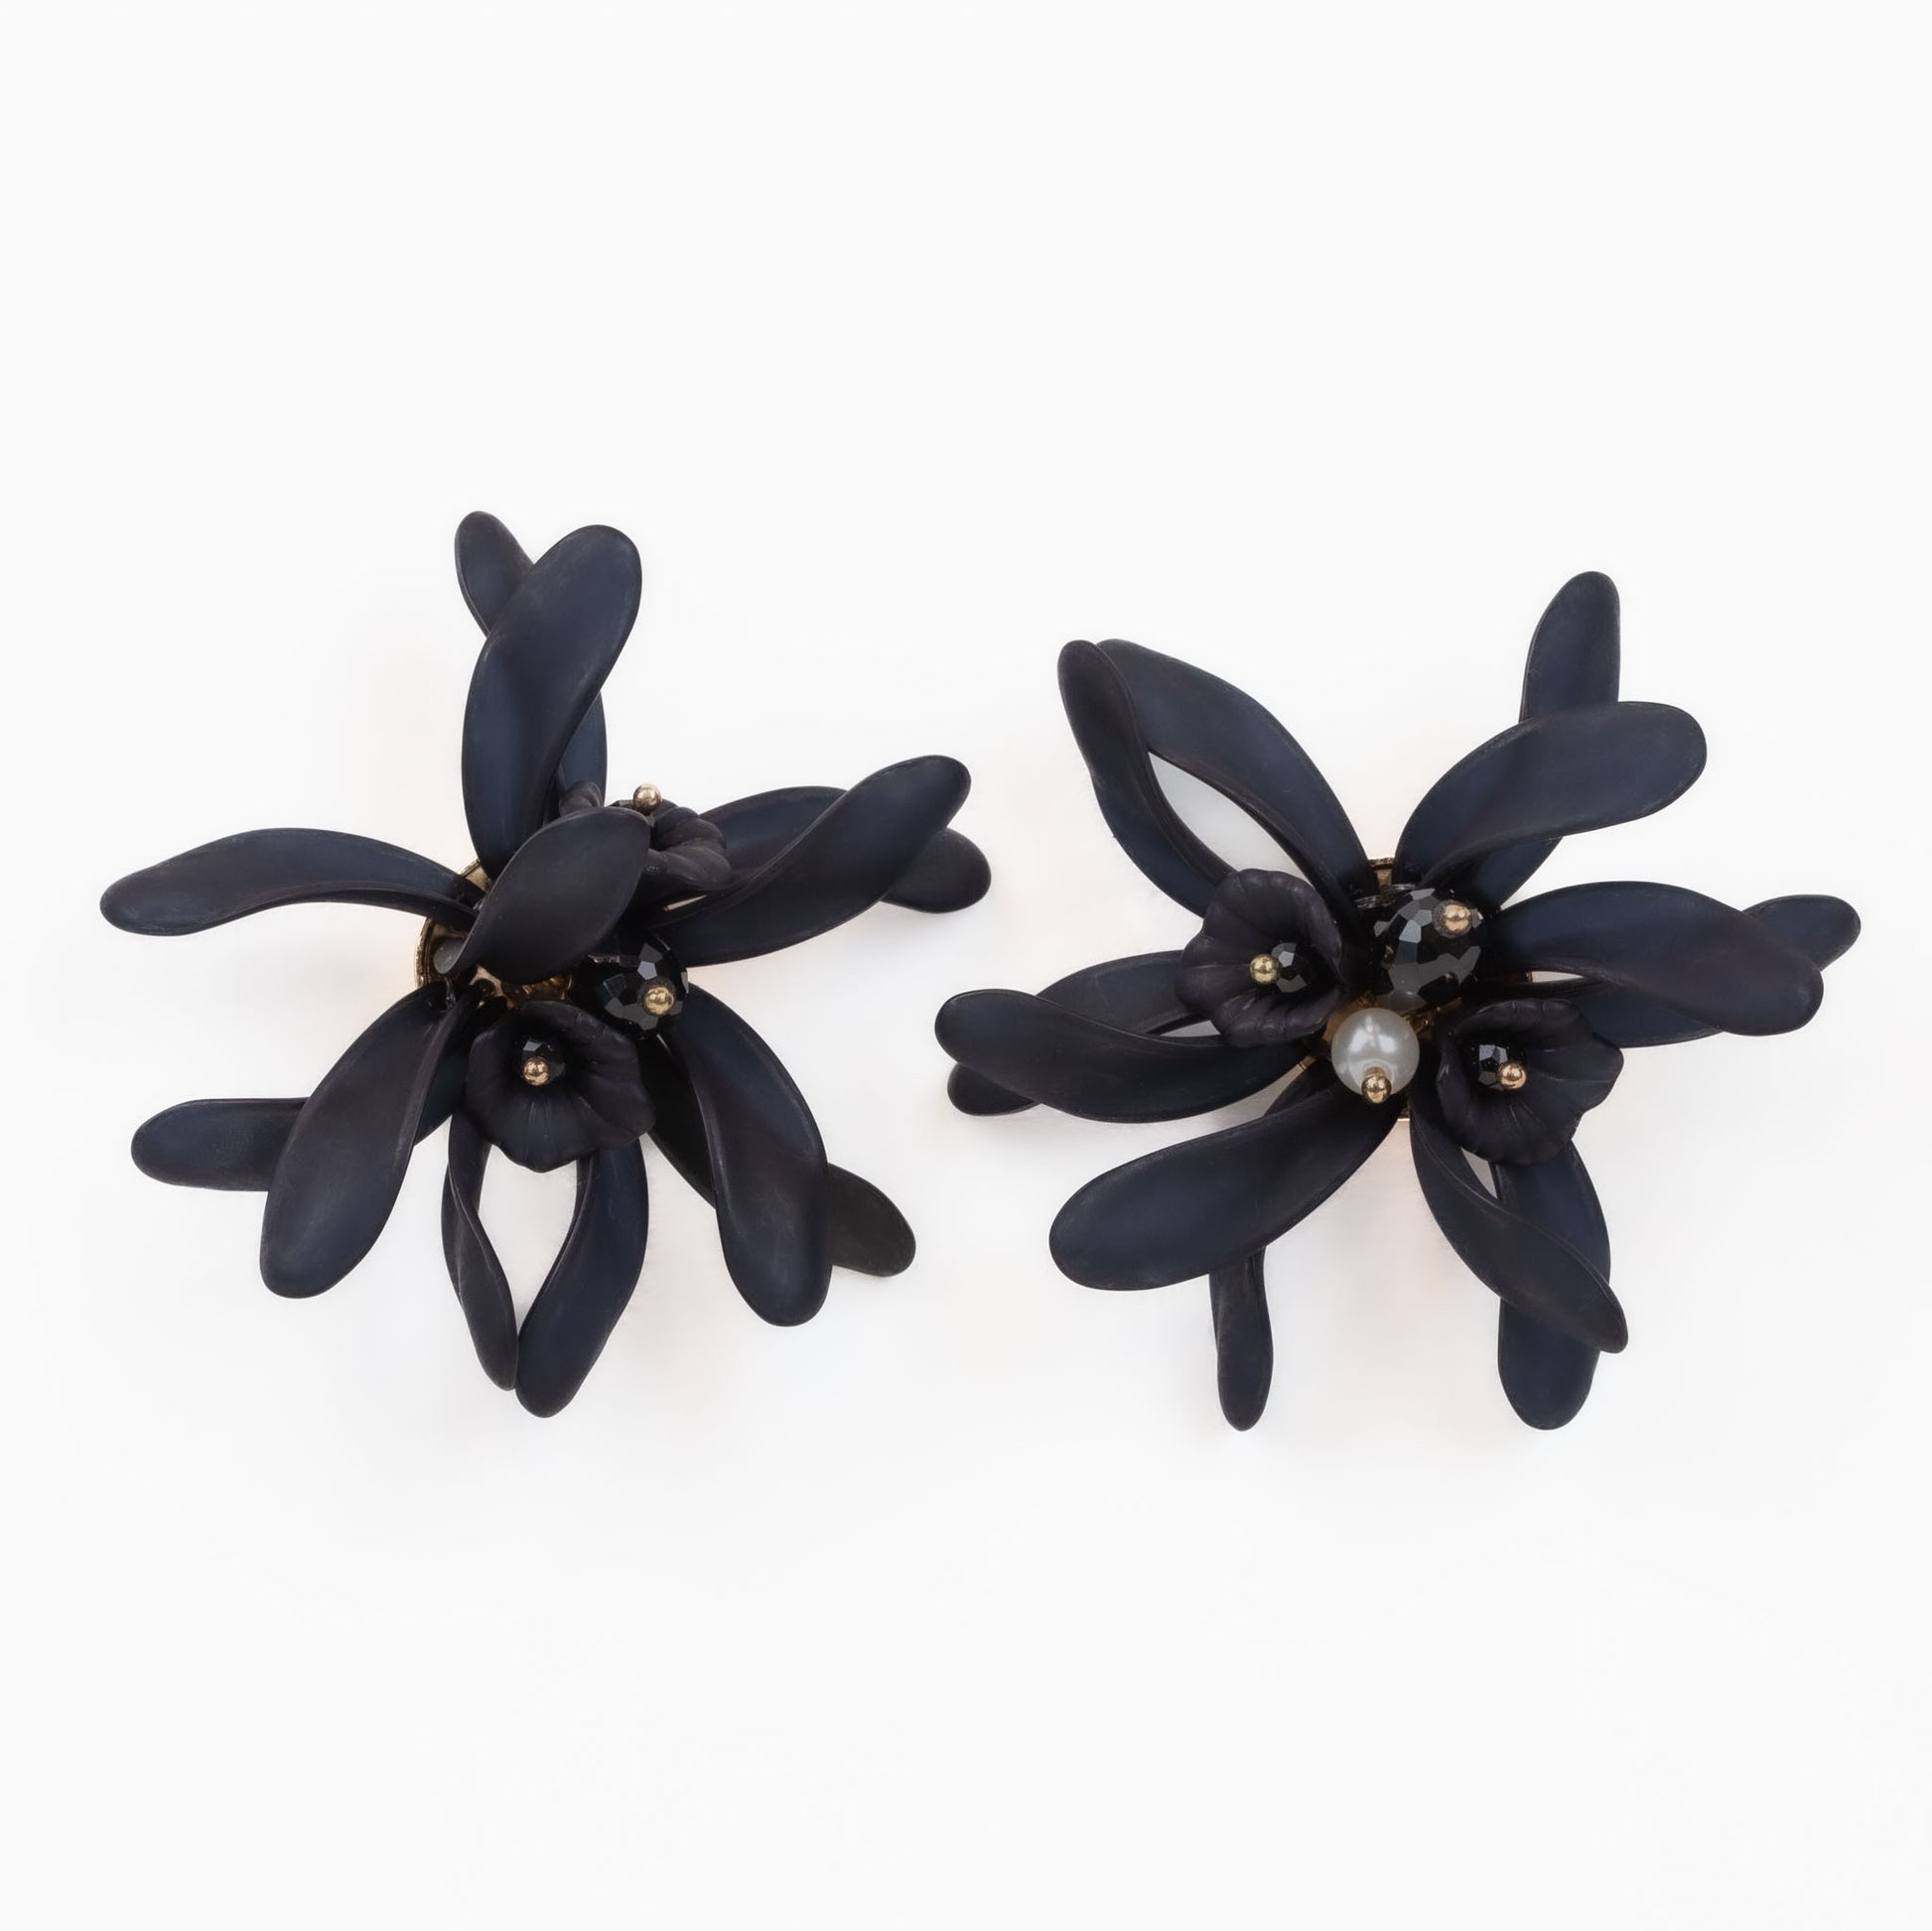 Cercei mari în formă de floare cu perle - Negru